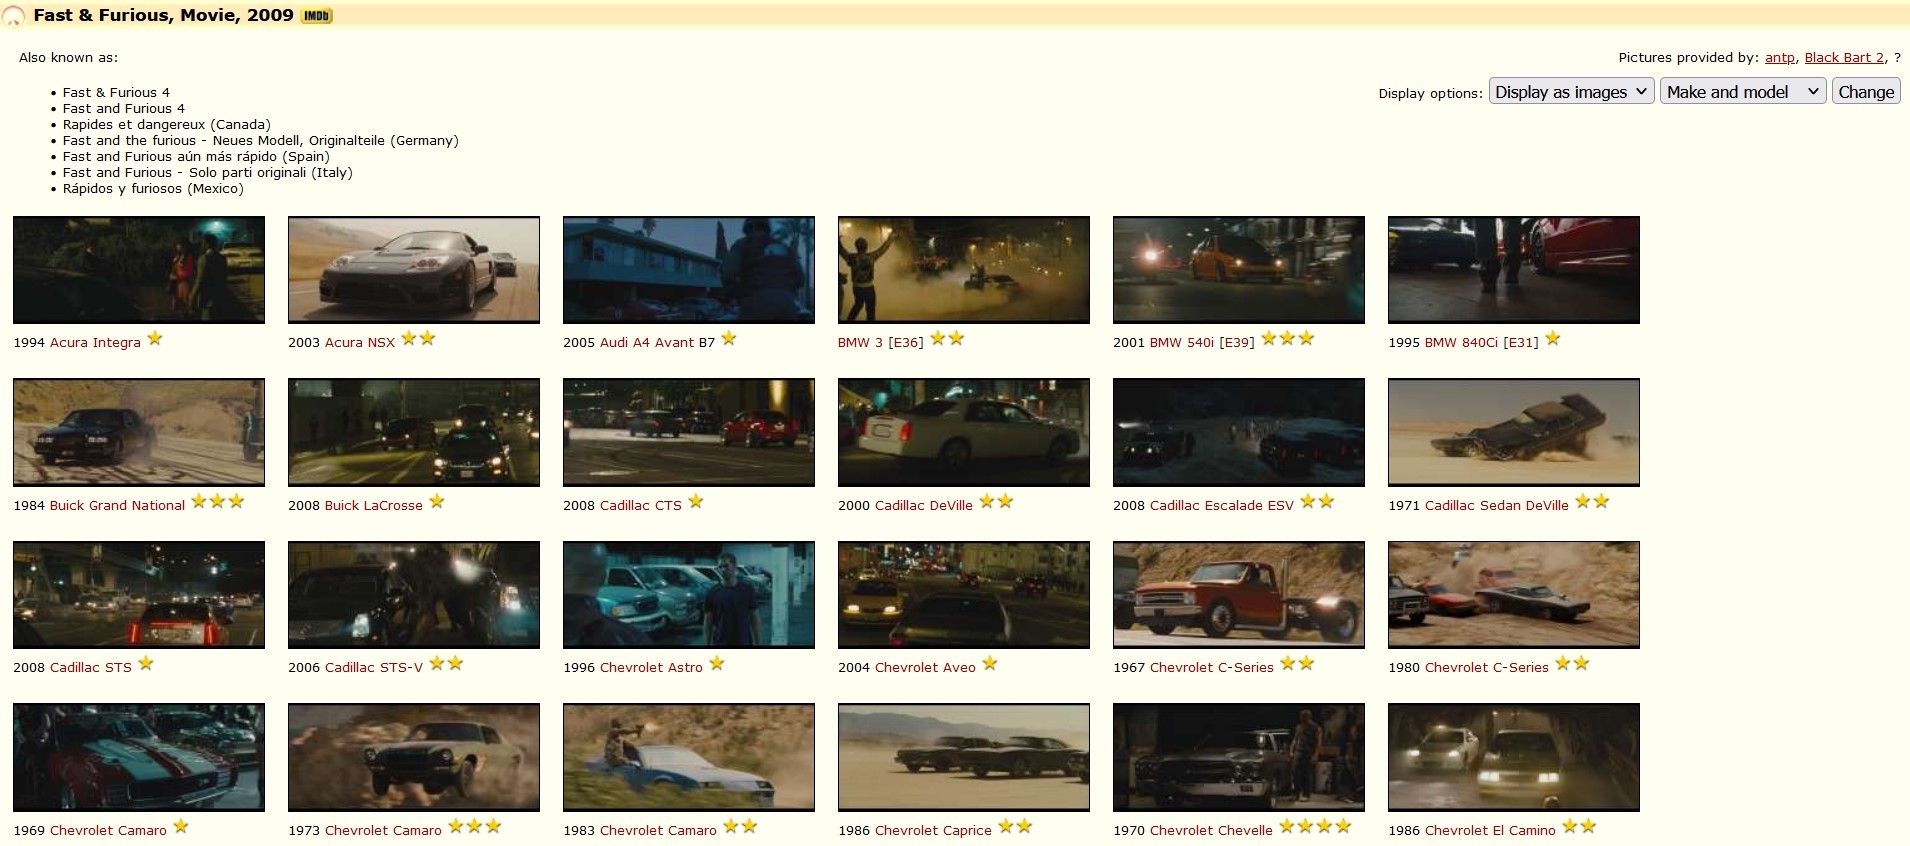 Fast & Furious (2009) - IMDb